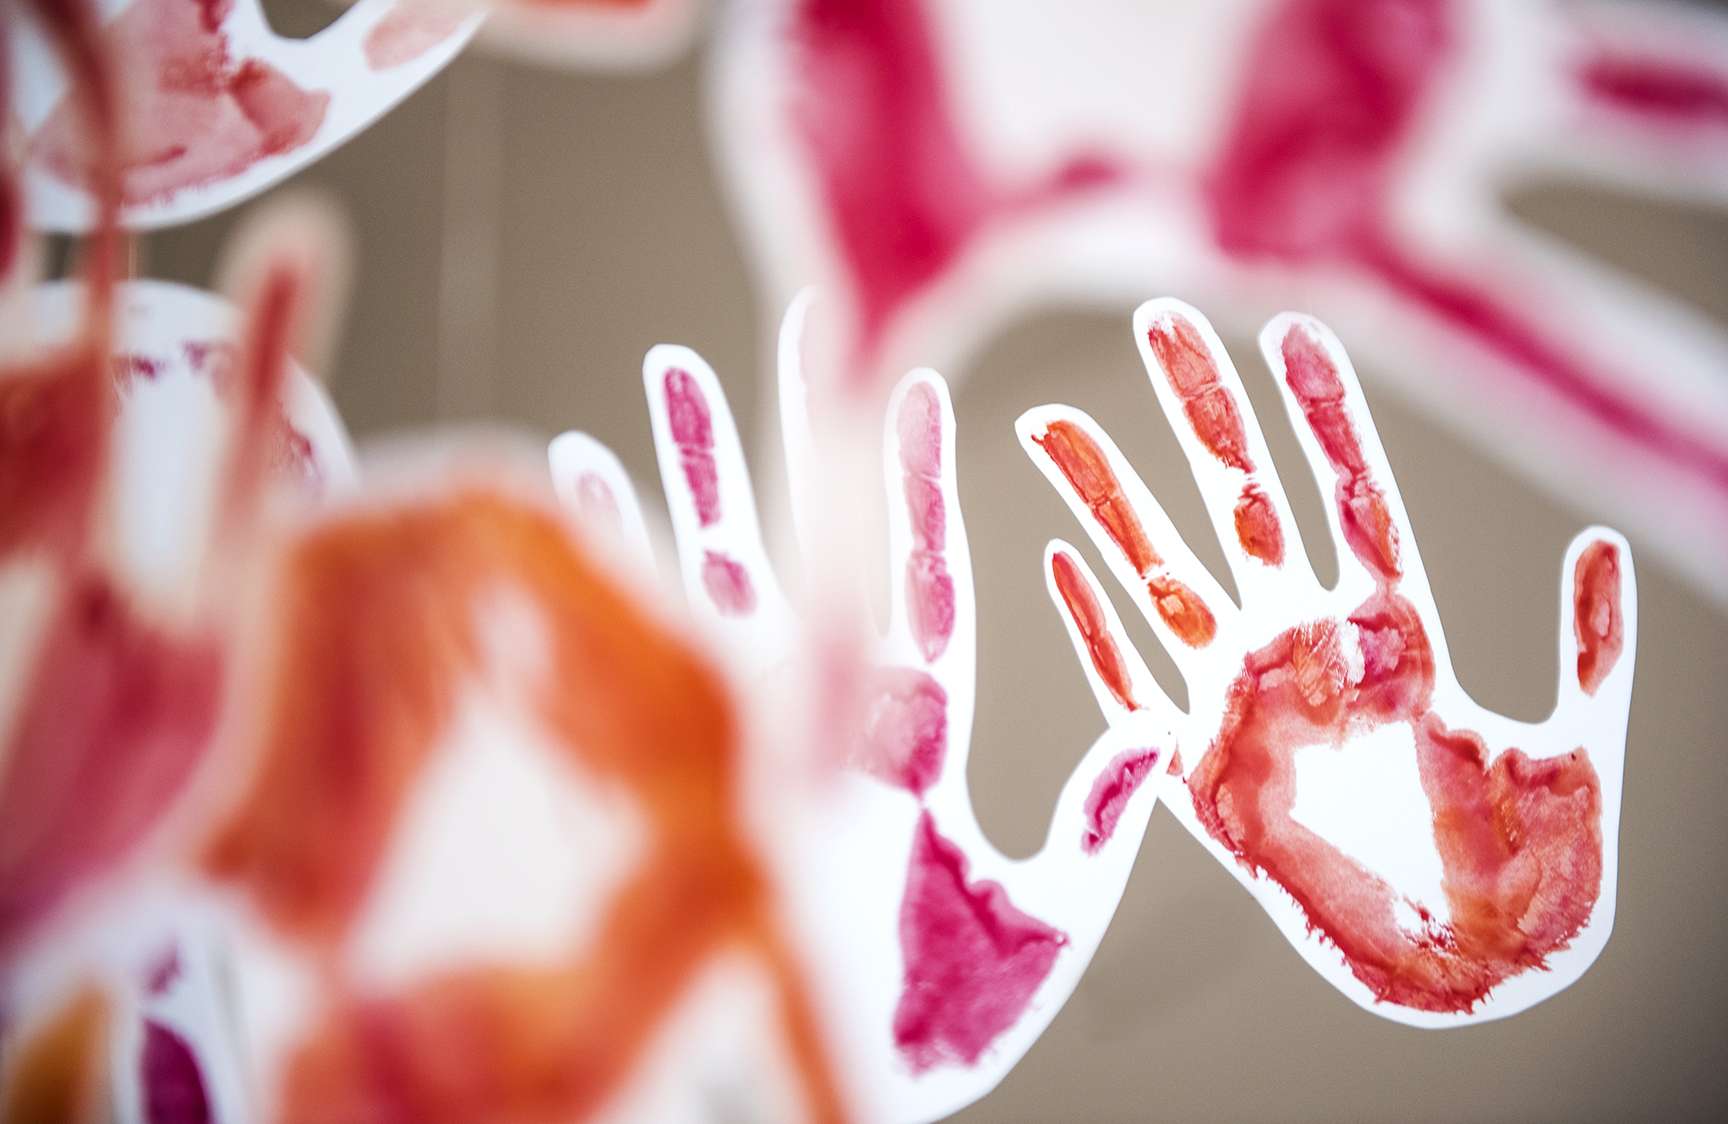 Am 12. Februar wird jährlich der "Red Hand Day" begangen.